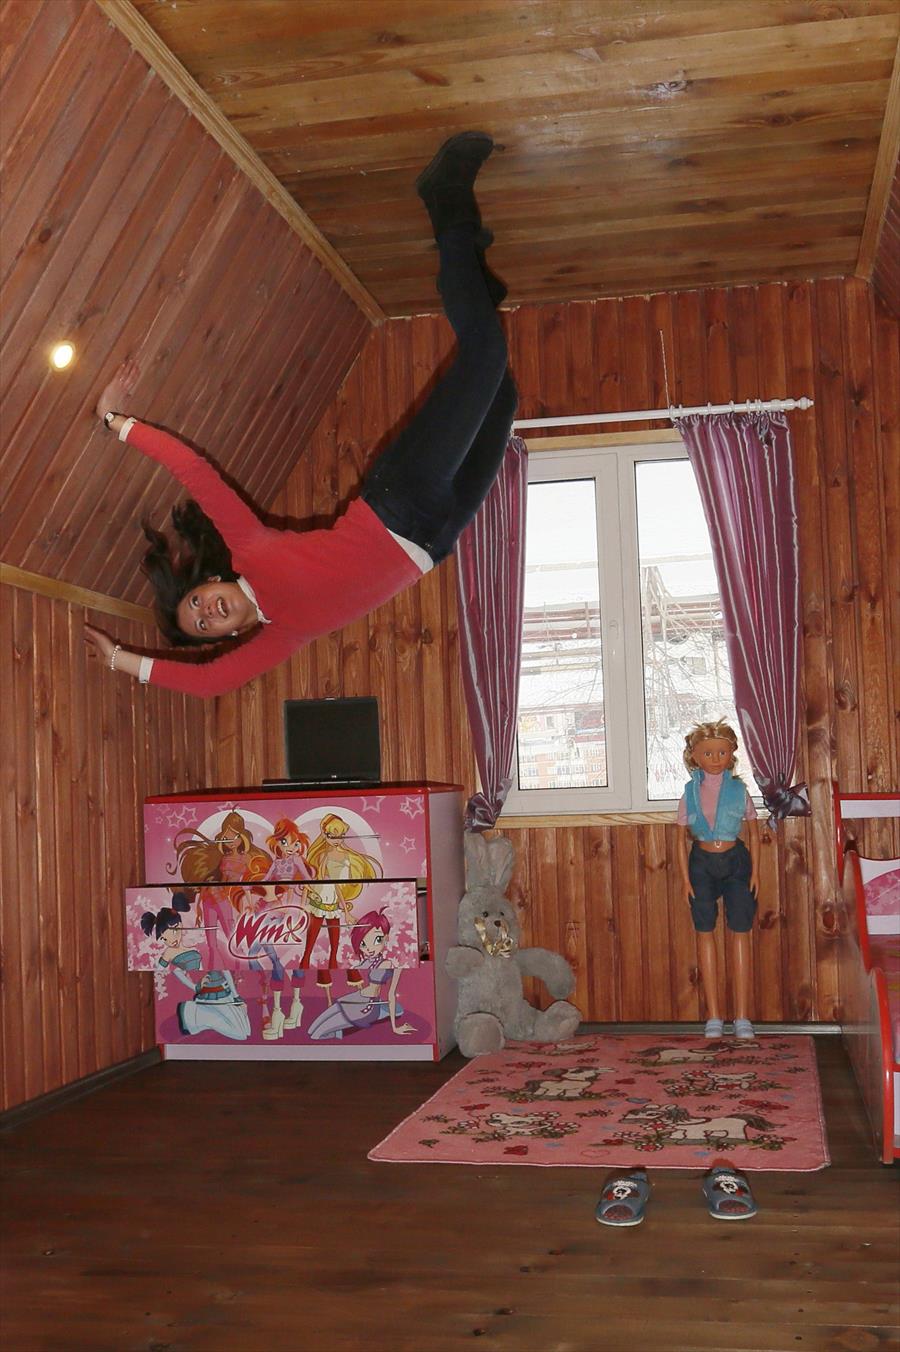 بالصور: منزل مقلوب لجذب السياح في روسيا